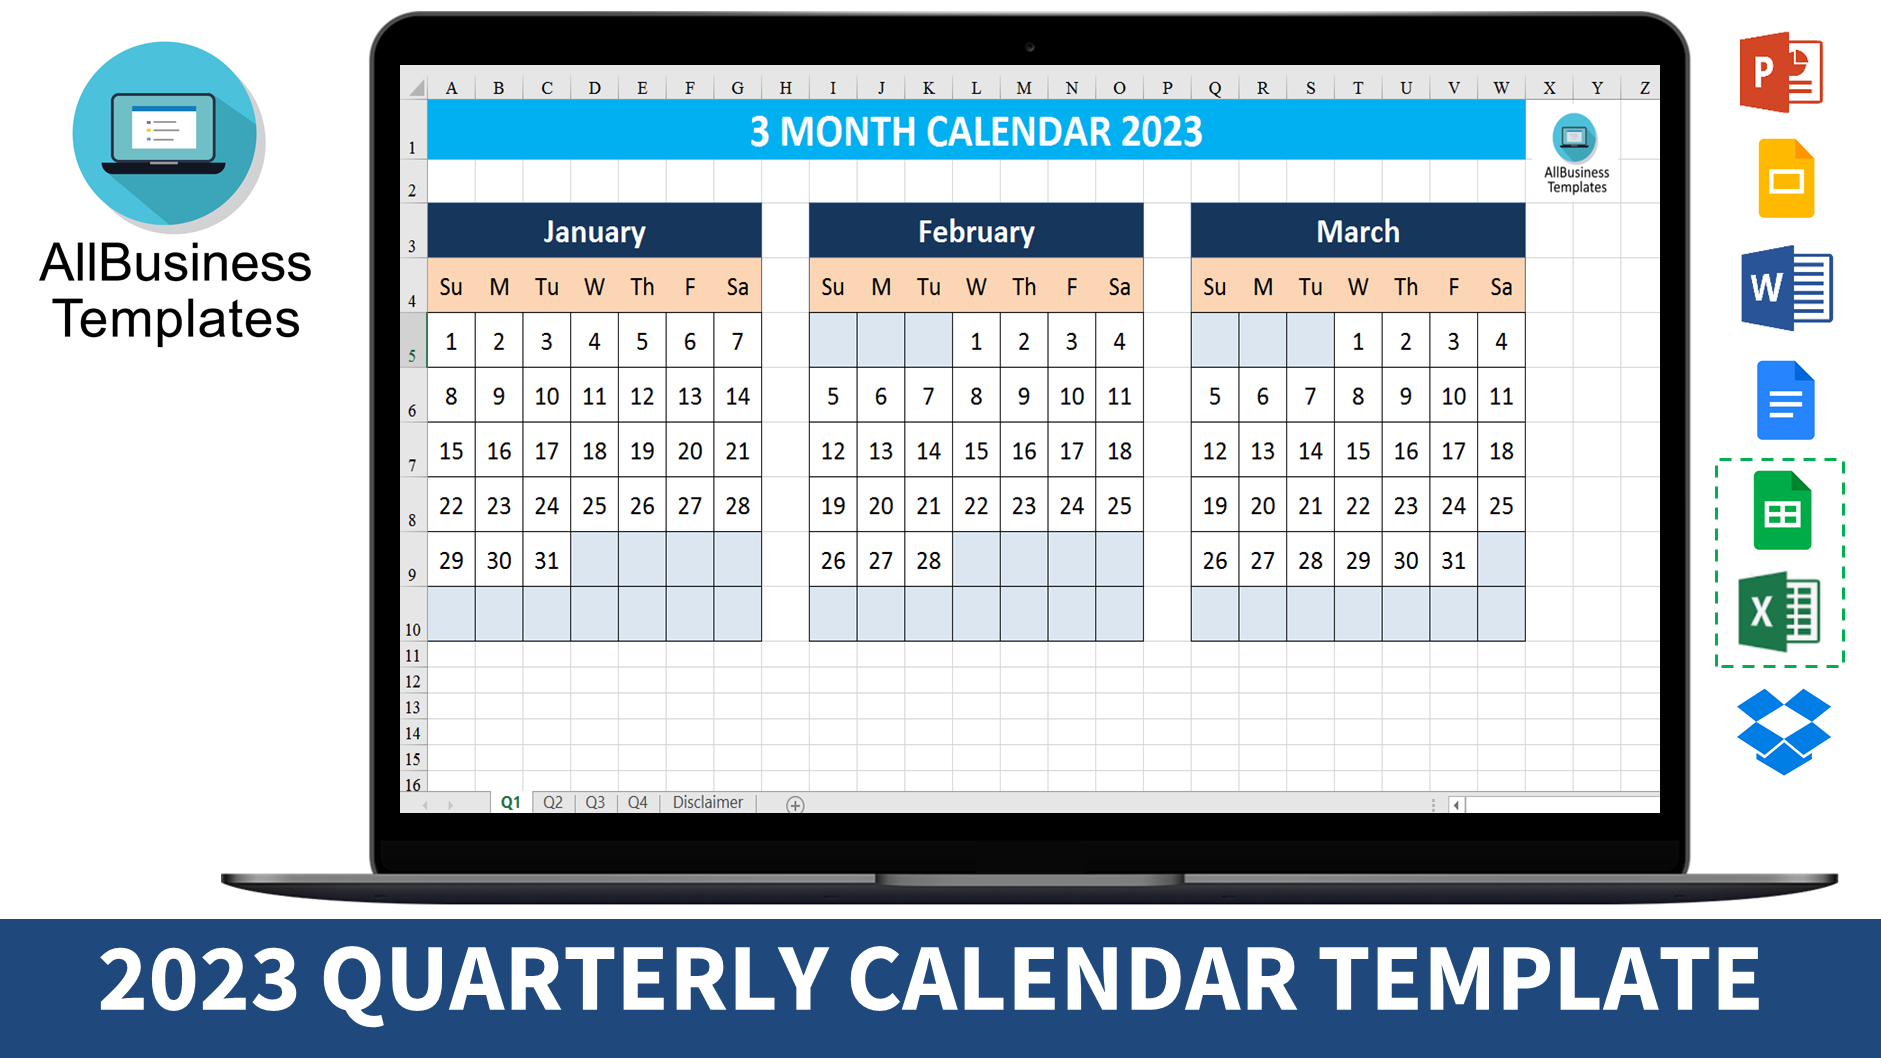 3 month calendar 2023 template